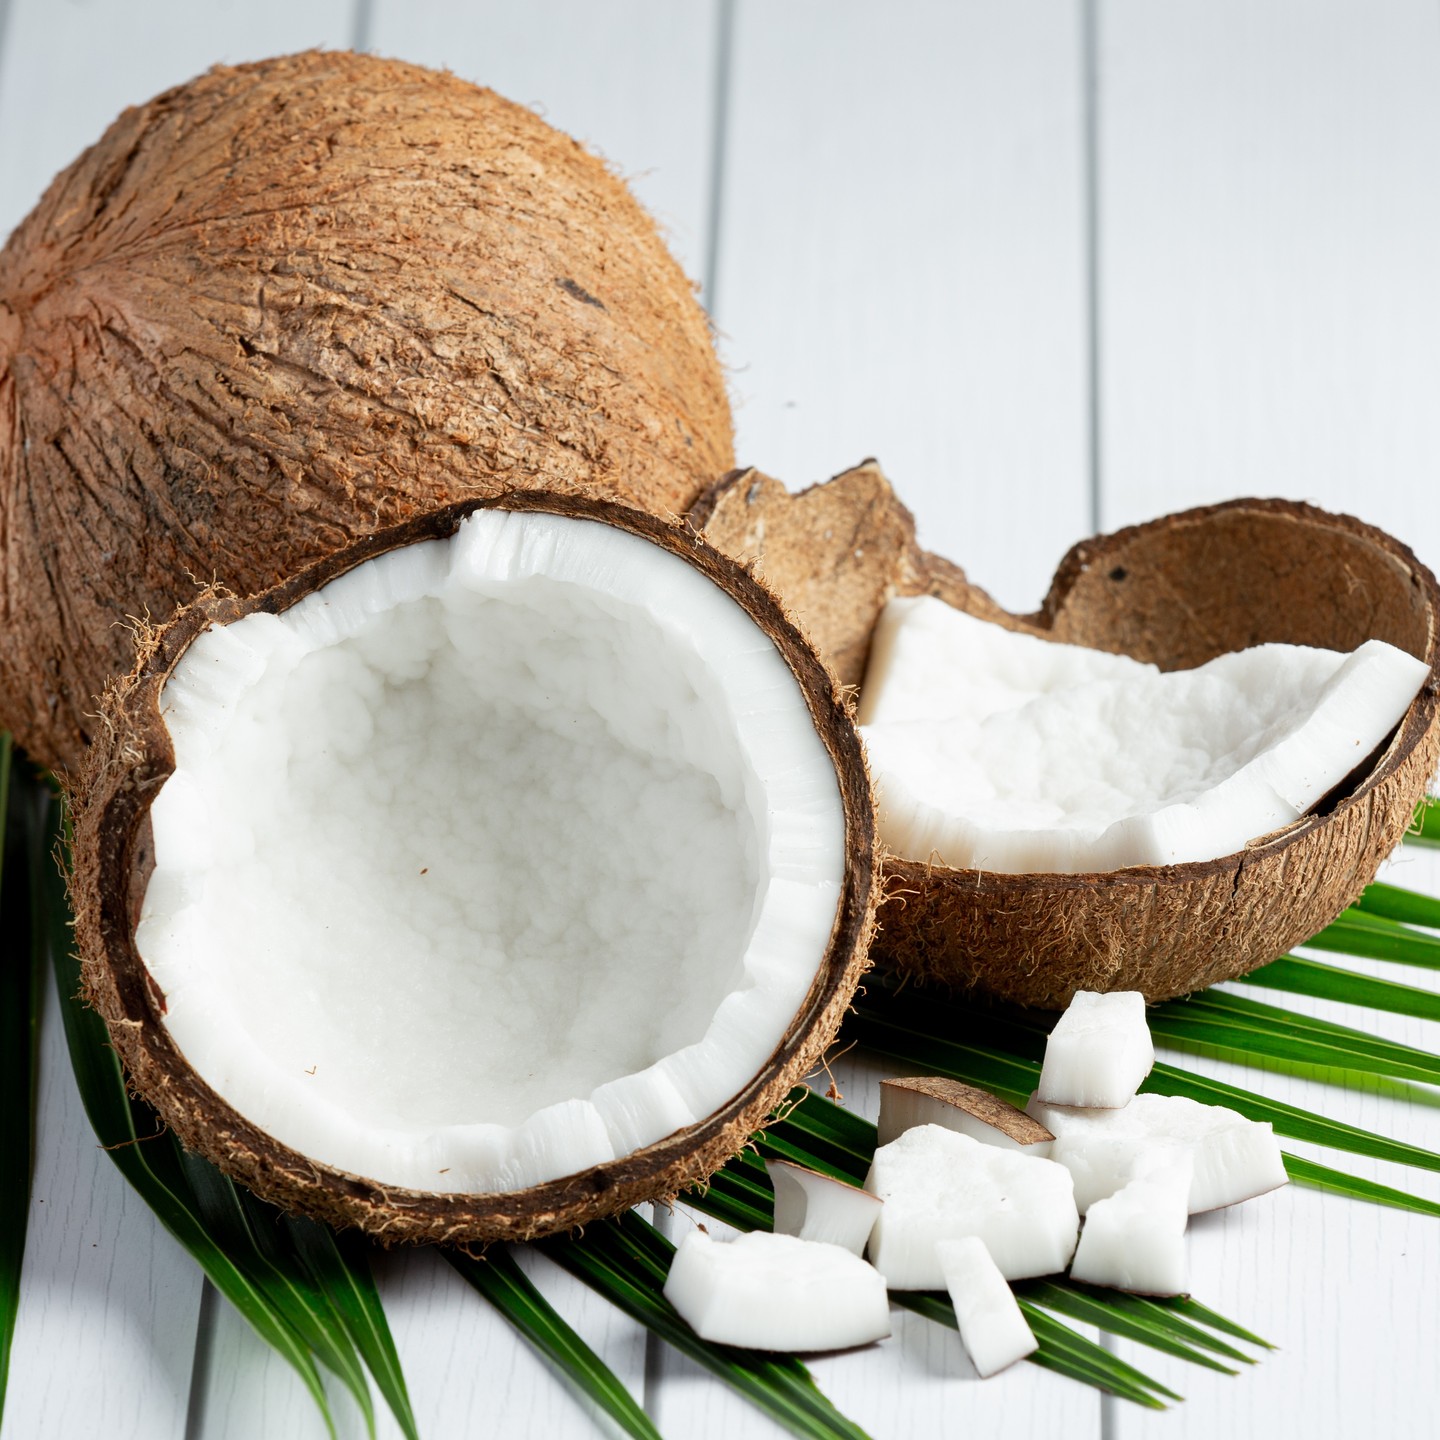 Jak chutná kokos? 🥥

Kokos je zcela právem řazen mezi tzv. superpotraviny, a to především díky vysokému obsahu zdraví prospěšných tuků. O zdravotních benefitech kokosu toho bylo napsáno již mnoho a mým cílem určitě není je všechny opakovat. 

👉 Pojďme se raději podívat na různé formy kokosu, které jsou k dostání, a jejich využití v kuchyni. 

Kokos má totiž skutečně mnoho podob. 👇

🥥Strouhaný kokos
🥥Kokosové lupínky/plátky/chipsy
🥥Kokosové mléko
🥥Kokosová smetana/krém
🥥Kokosová voda
🥥Kokosová mouka
🥥Kokosový olej
🥥Kokosové máslo
🥥Kokosový cukr
🥥Kokosový sirup
🥥Kokosový jogurt
🥥 Kokosový kefír
🥥Coconut aminos
🥥Kokosový ocet

Zapomněla jsem na některou?

Jaká je vaše oblíbená surovina z kokosu?
Dejte mi vědět do komentáře. 🔽

Více informací o jednotlivých surovinách vyráběných z kokosu najdete v mém novém článku: https://www.receptyprozivot.cz/jak-chutna-kokos/

❓Věděli jste, že ačkoli bývá kokos často řazen mezi ořechy, ve skutečnosti se jedná o druh ovoce?🌴 Díky tomu si ho můžete dopřát i při alergii na ořechy, nebo například při eliminační fázi autoimunitního protokolu.

#kokos #chutkokosu #jakchutnakokos #receptyprozivot #kokosovemleko #kokosovavoda #kokosovámouka #kokosovyolej #kokosovemaslo #kokosovycukr #strouhanykokos #kokosovechipsy #kokosovysirup #kokosovyjogurt #kokosoveaminos #kokosovyocet #vsezkokosu #bezorechu #aipeliminace #autoimunitniprotokol #aiprecepty #paleorecepty #lowcarbrecepty #paleocz #paleoczsk #rawrecepty